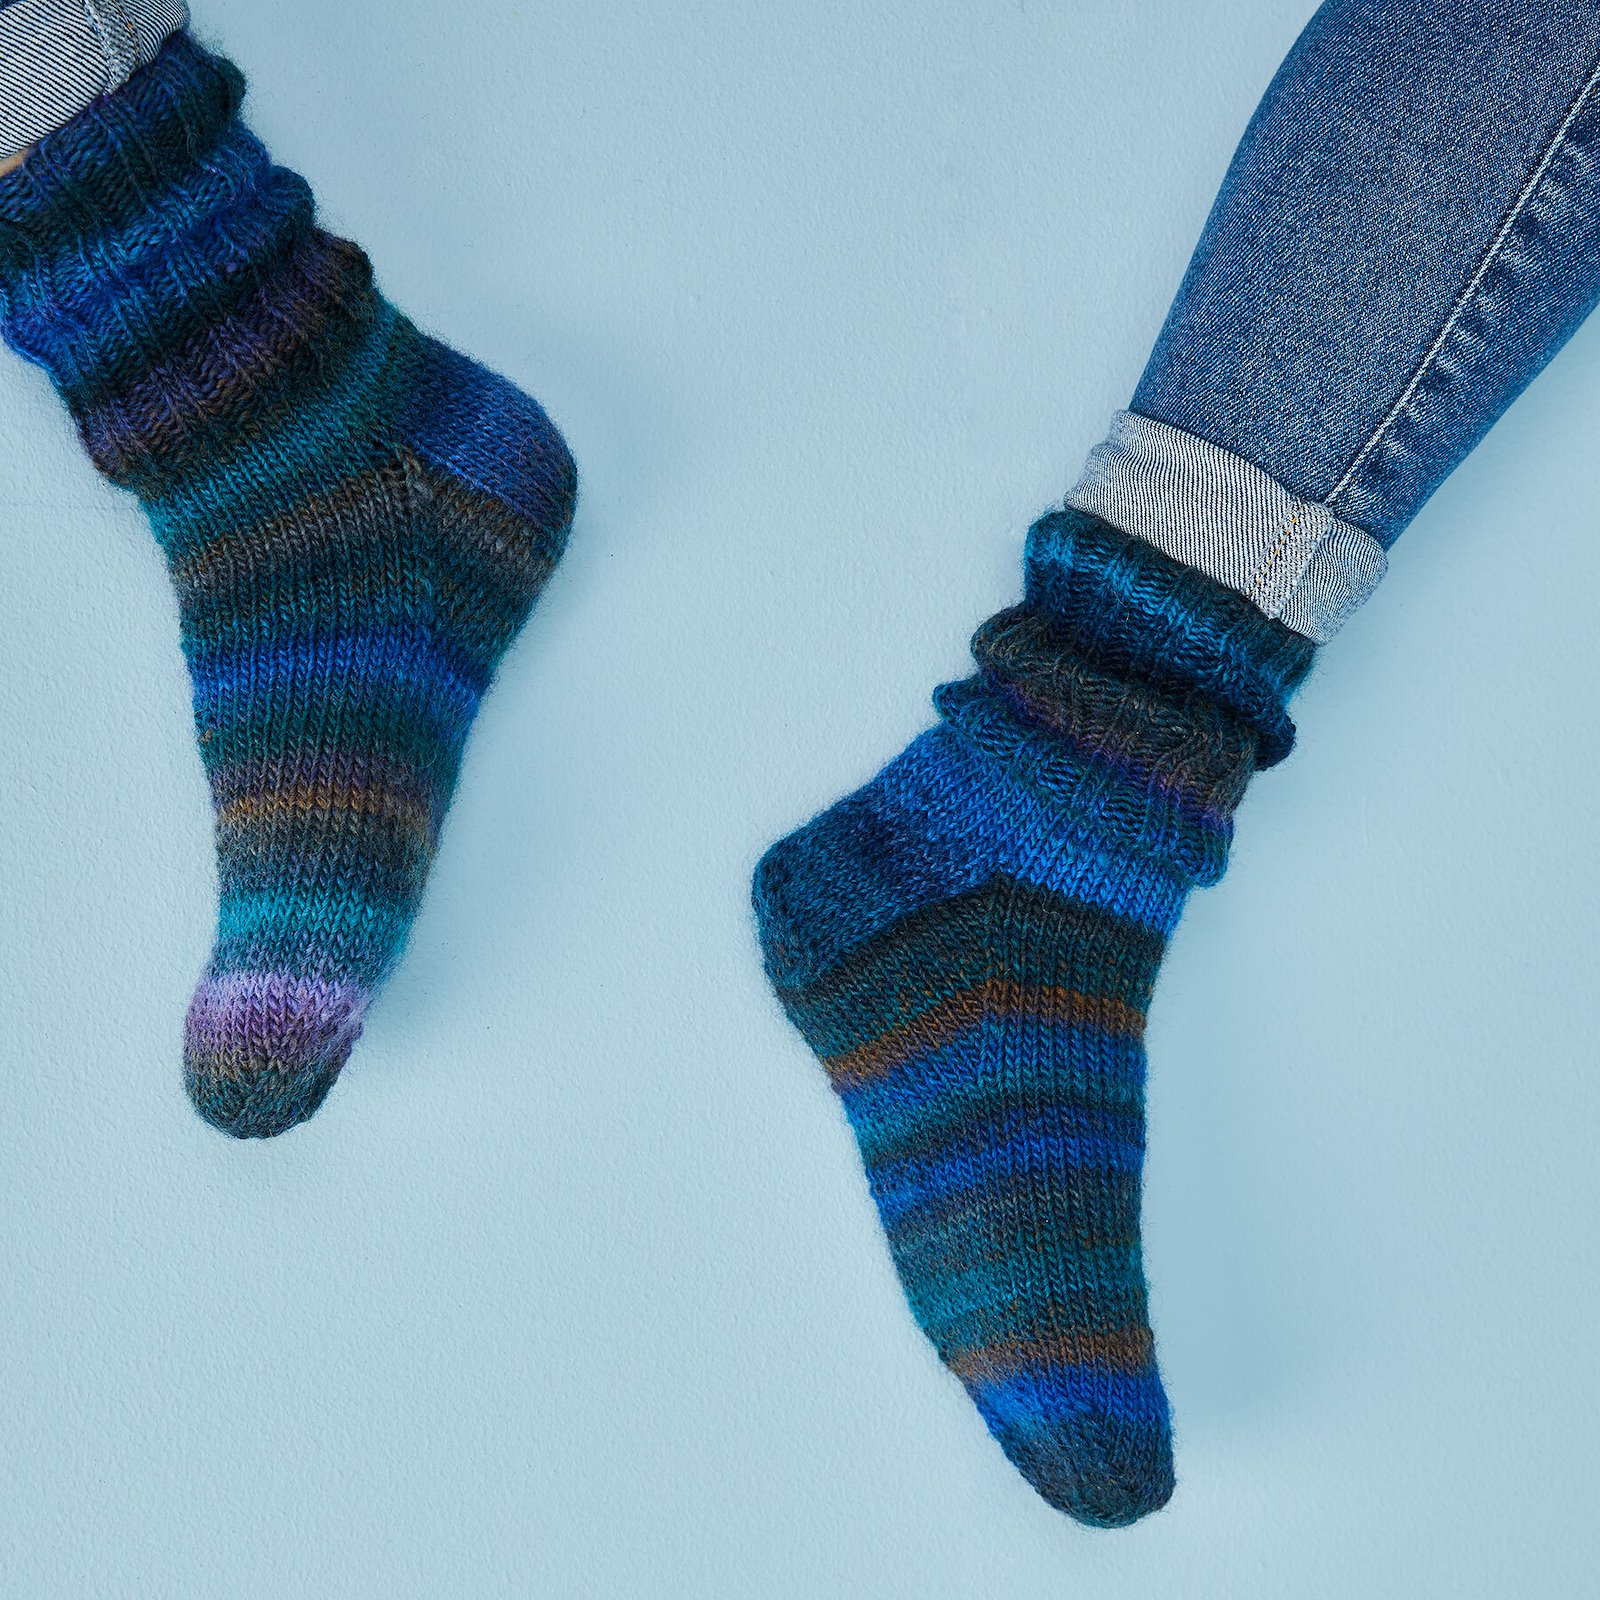 FRAYA knitting pattern - Lazy Sunday Socks, accessories 90000037_fraya3007_sskit